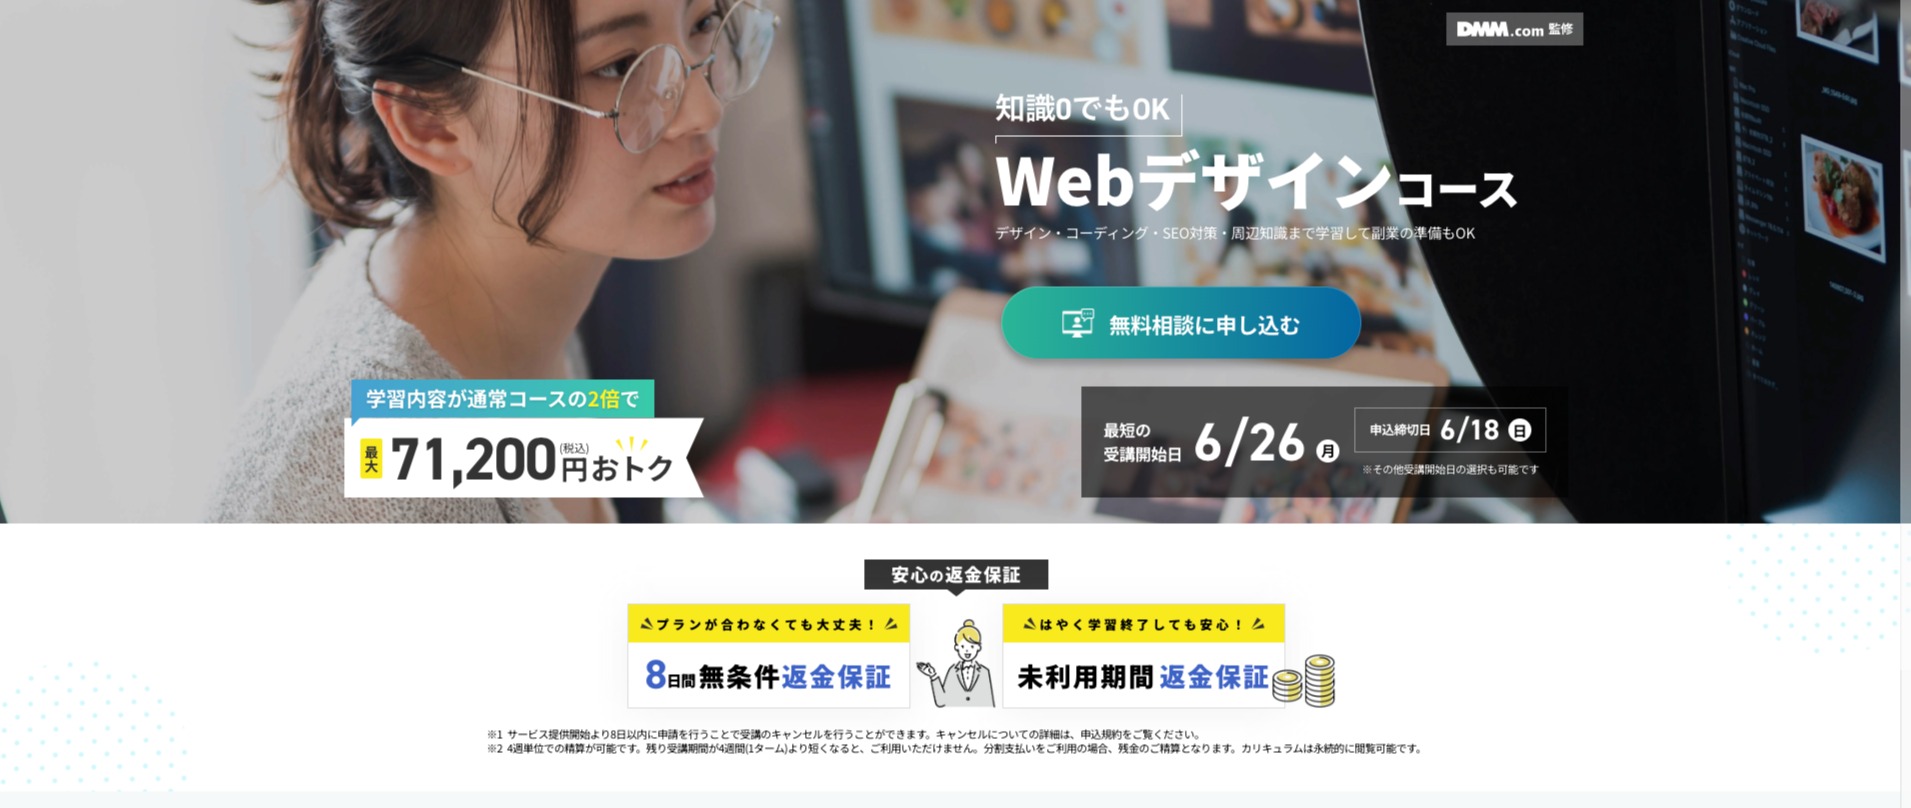 DMM WEBCAMP Webデザインコースの公式サイト